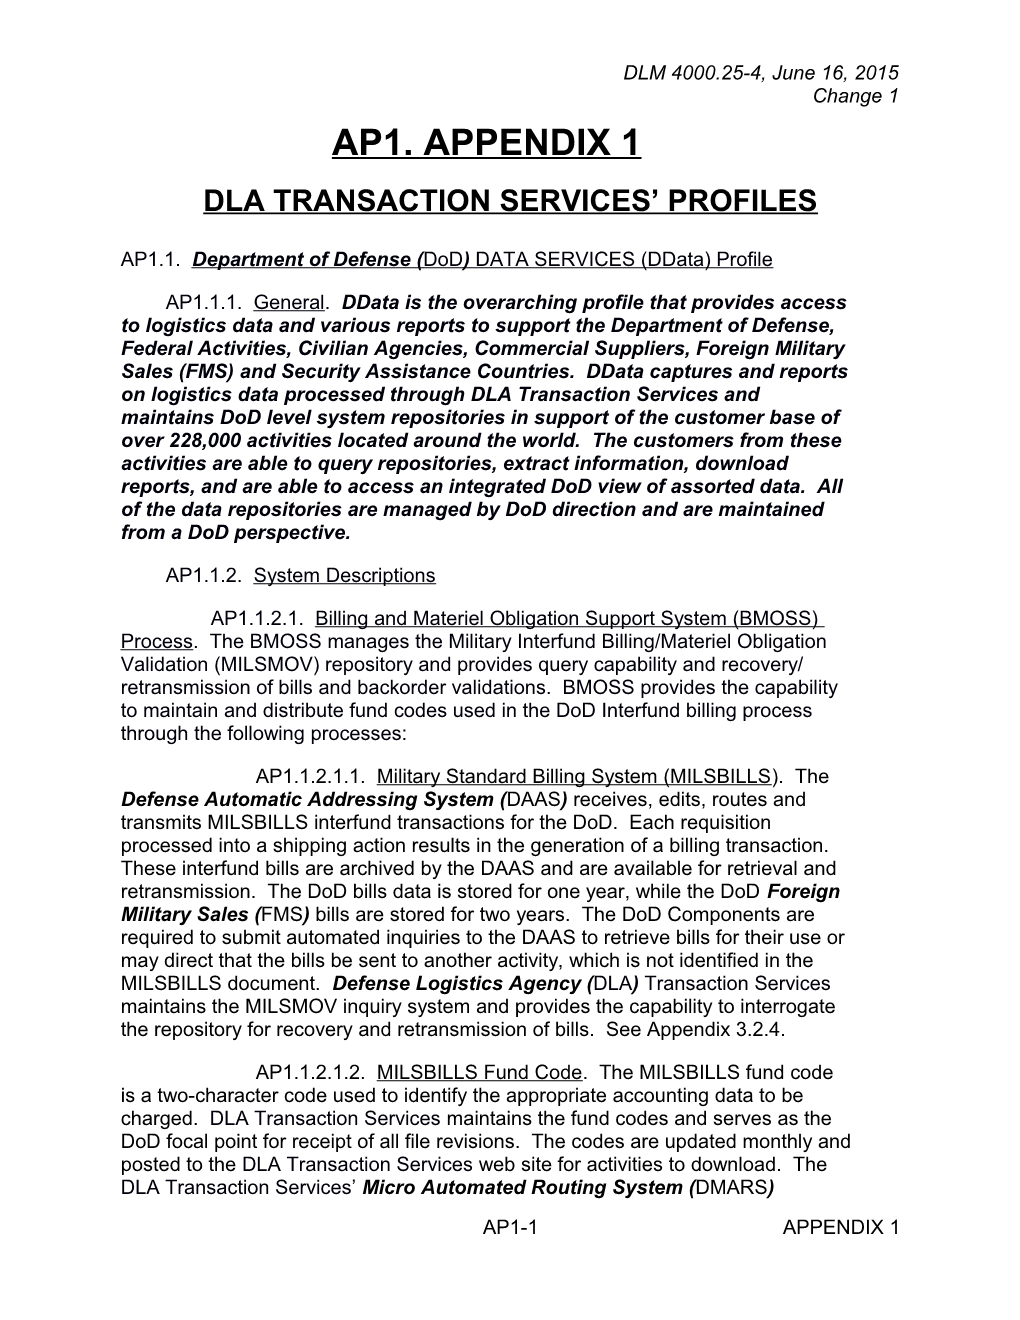 Appendix 1 - DLA Transaction Services Profiles